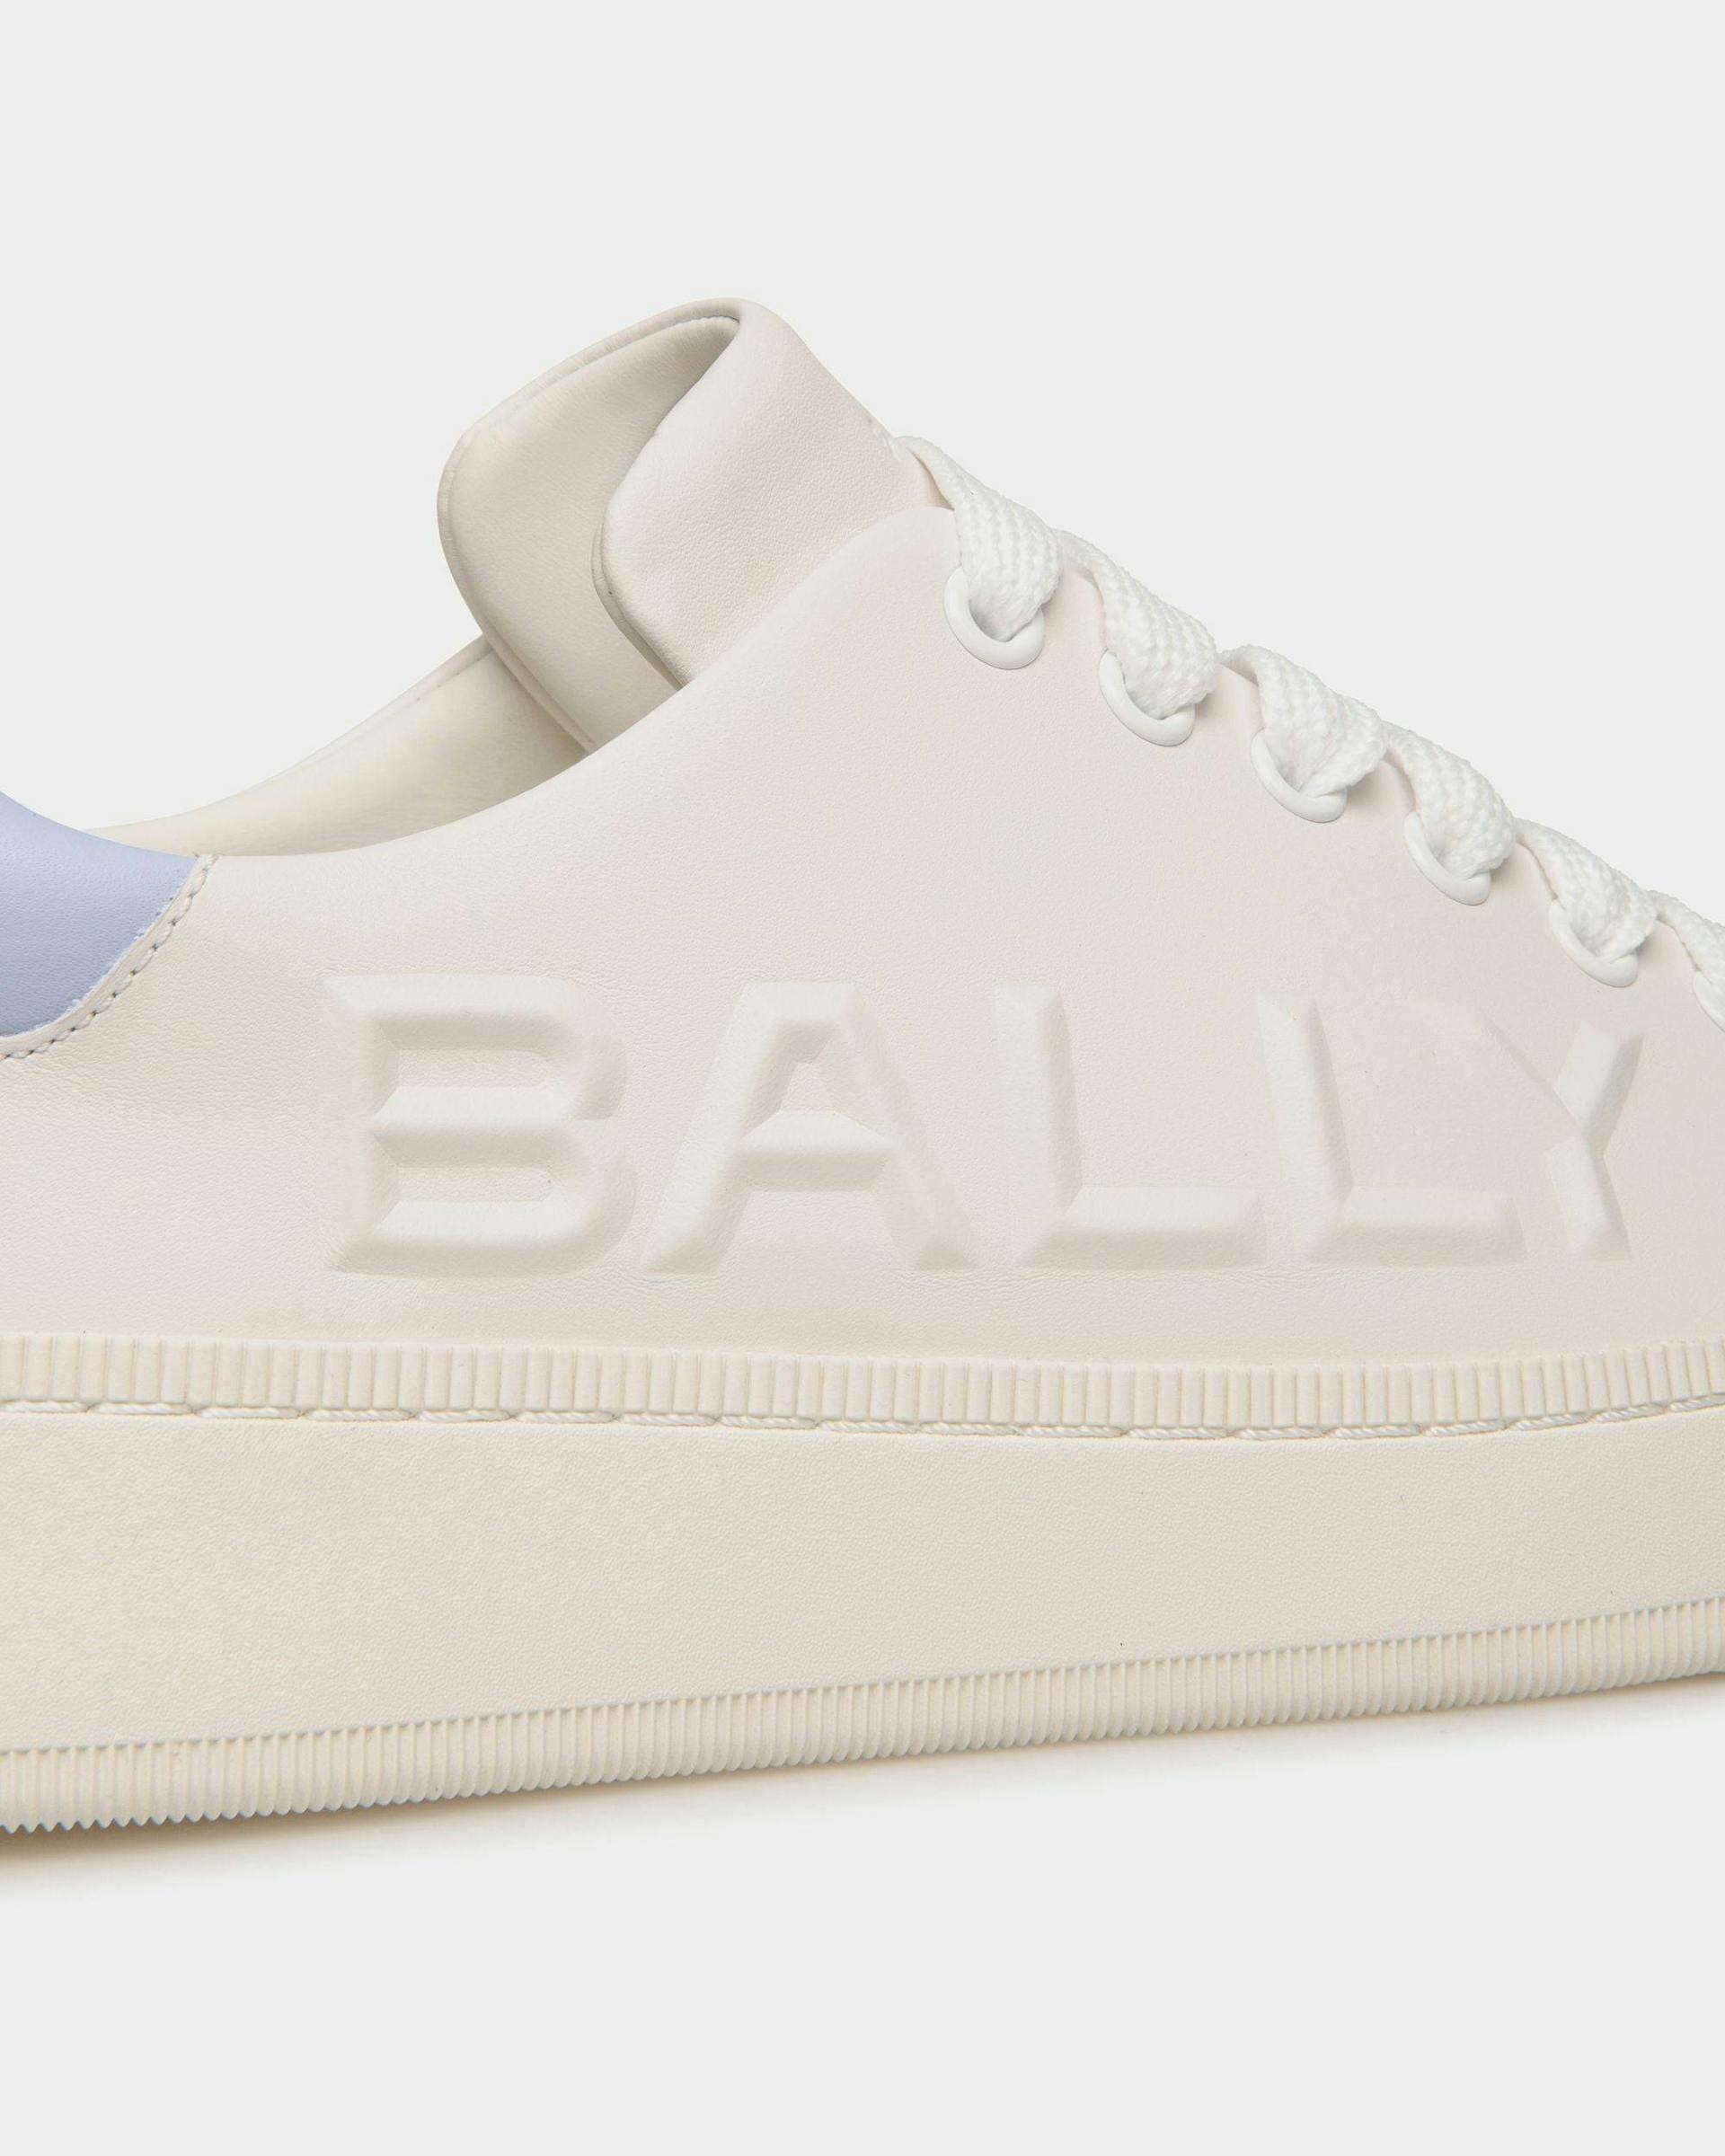 Women's Raise Sneaker in White And Light Blue Leather | Bally | Still Life Detail